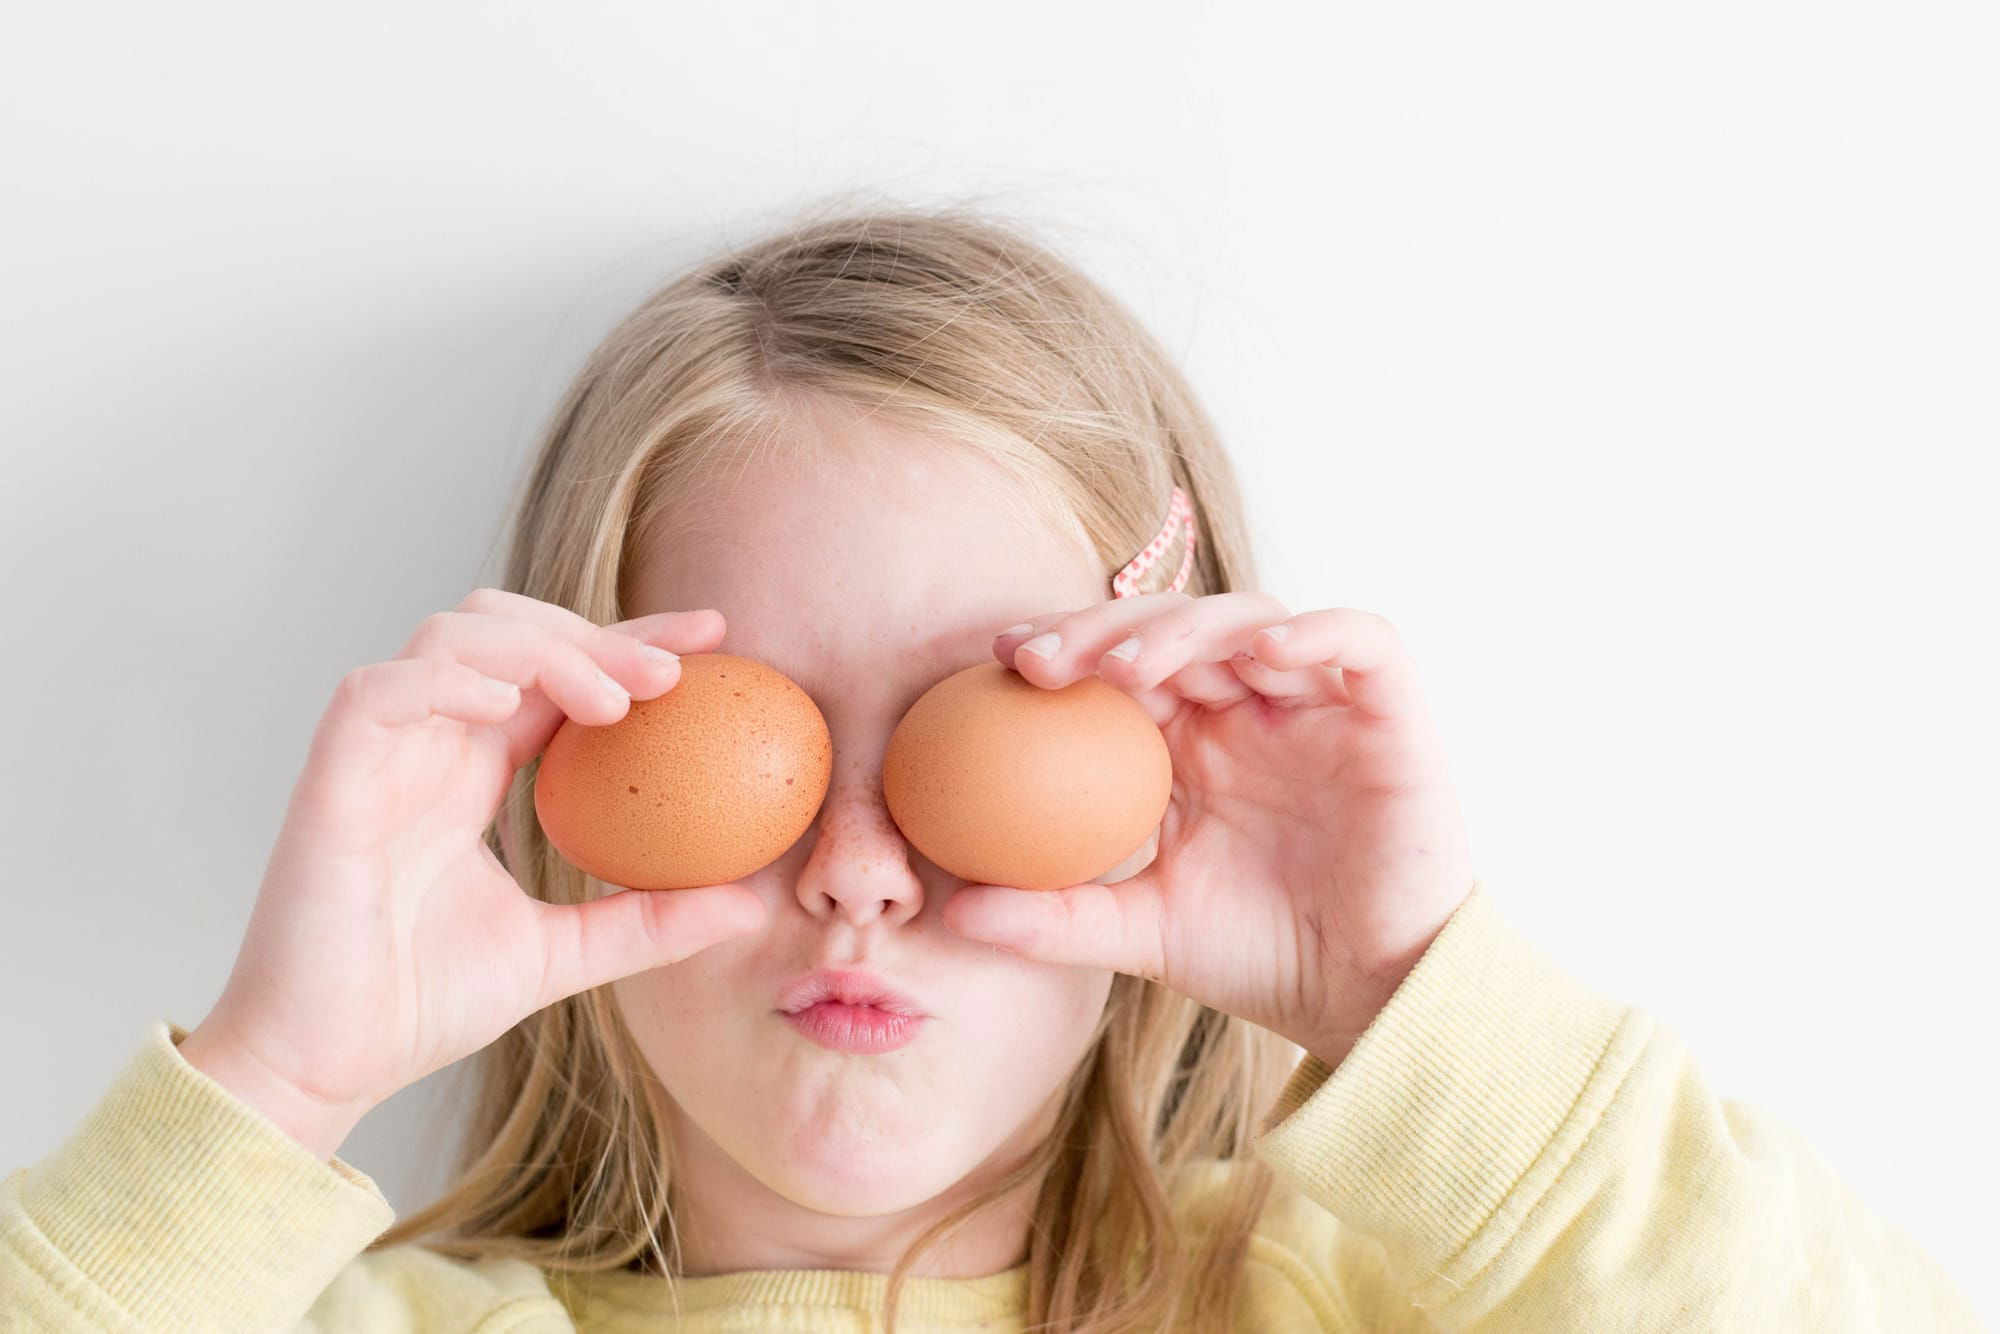 تعرف على 5 أطعمة طبيعية لتقوية بصر و رؤية أطفالك